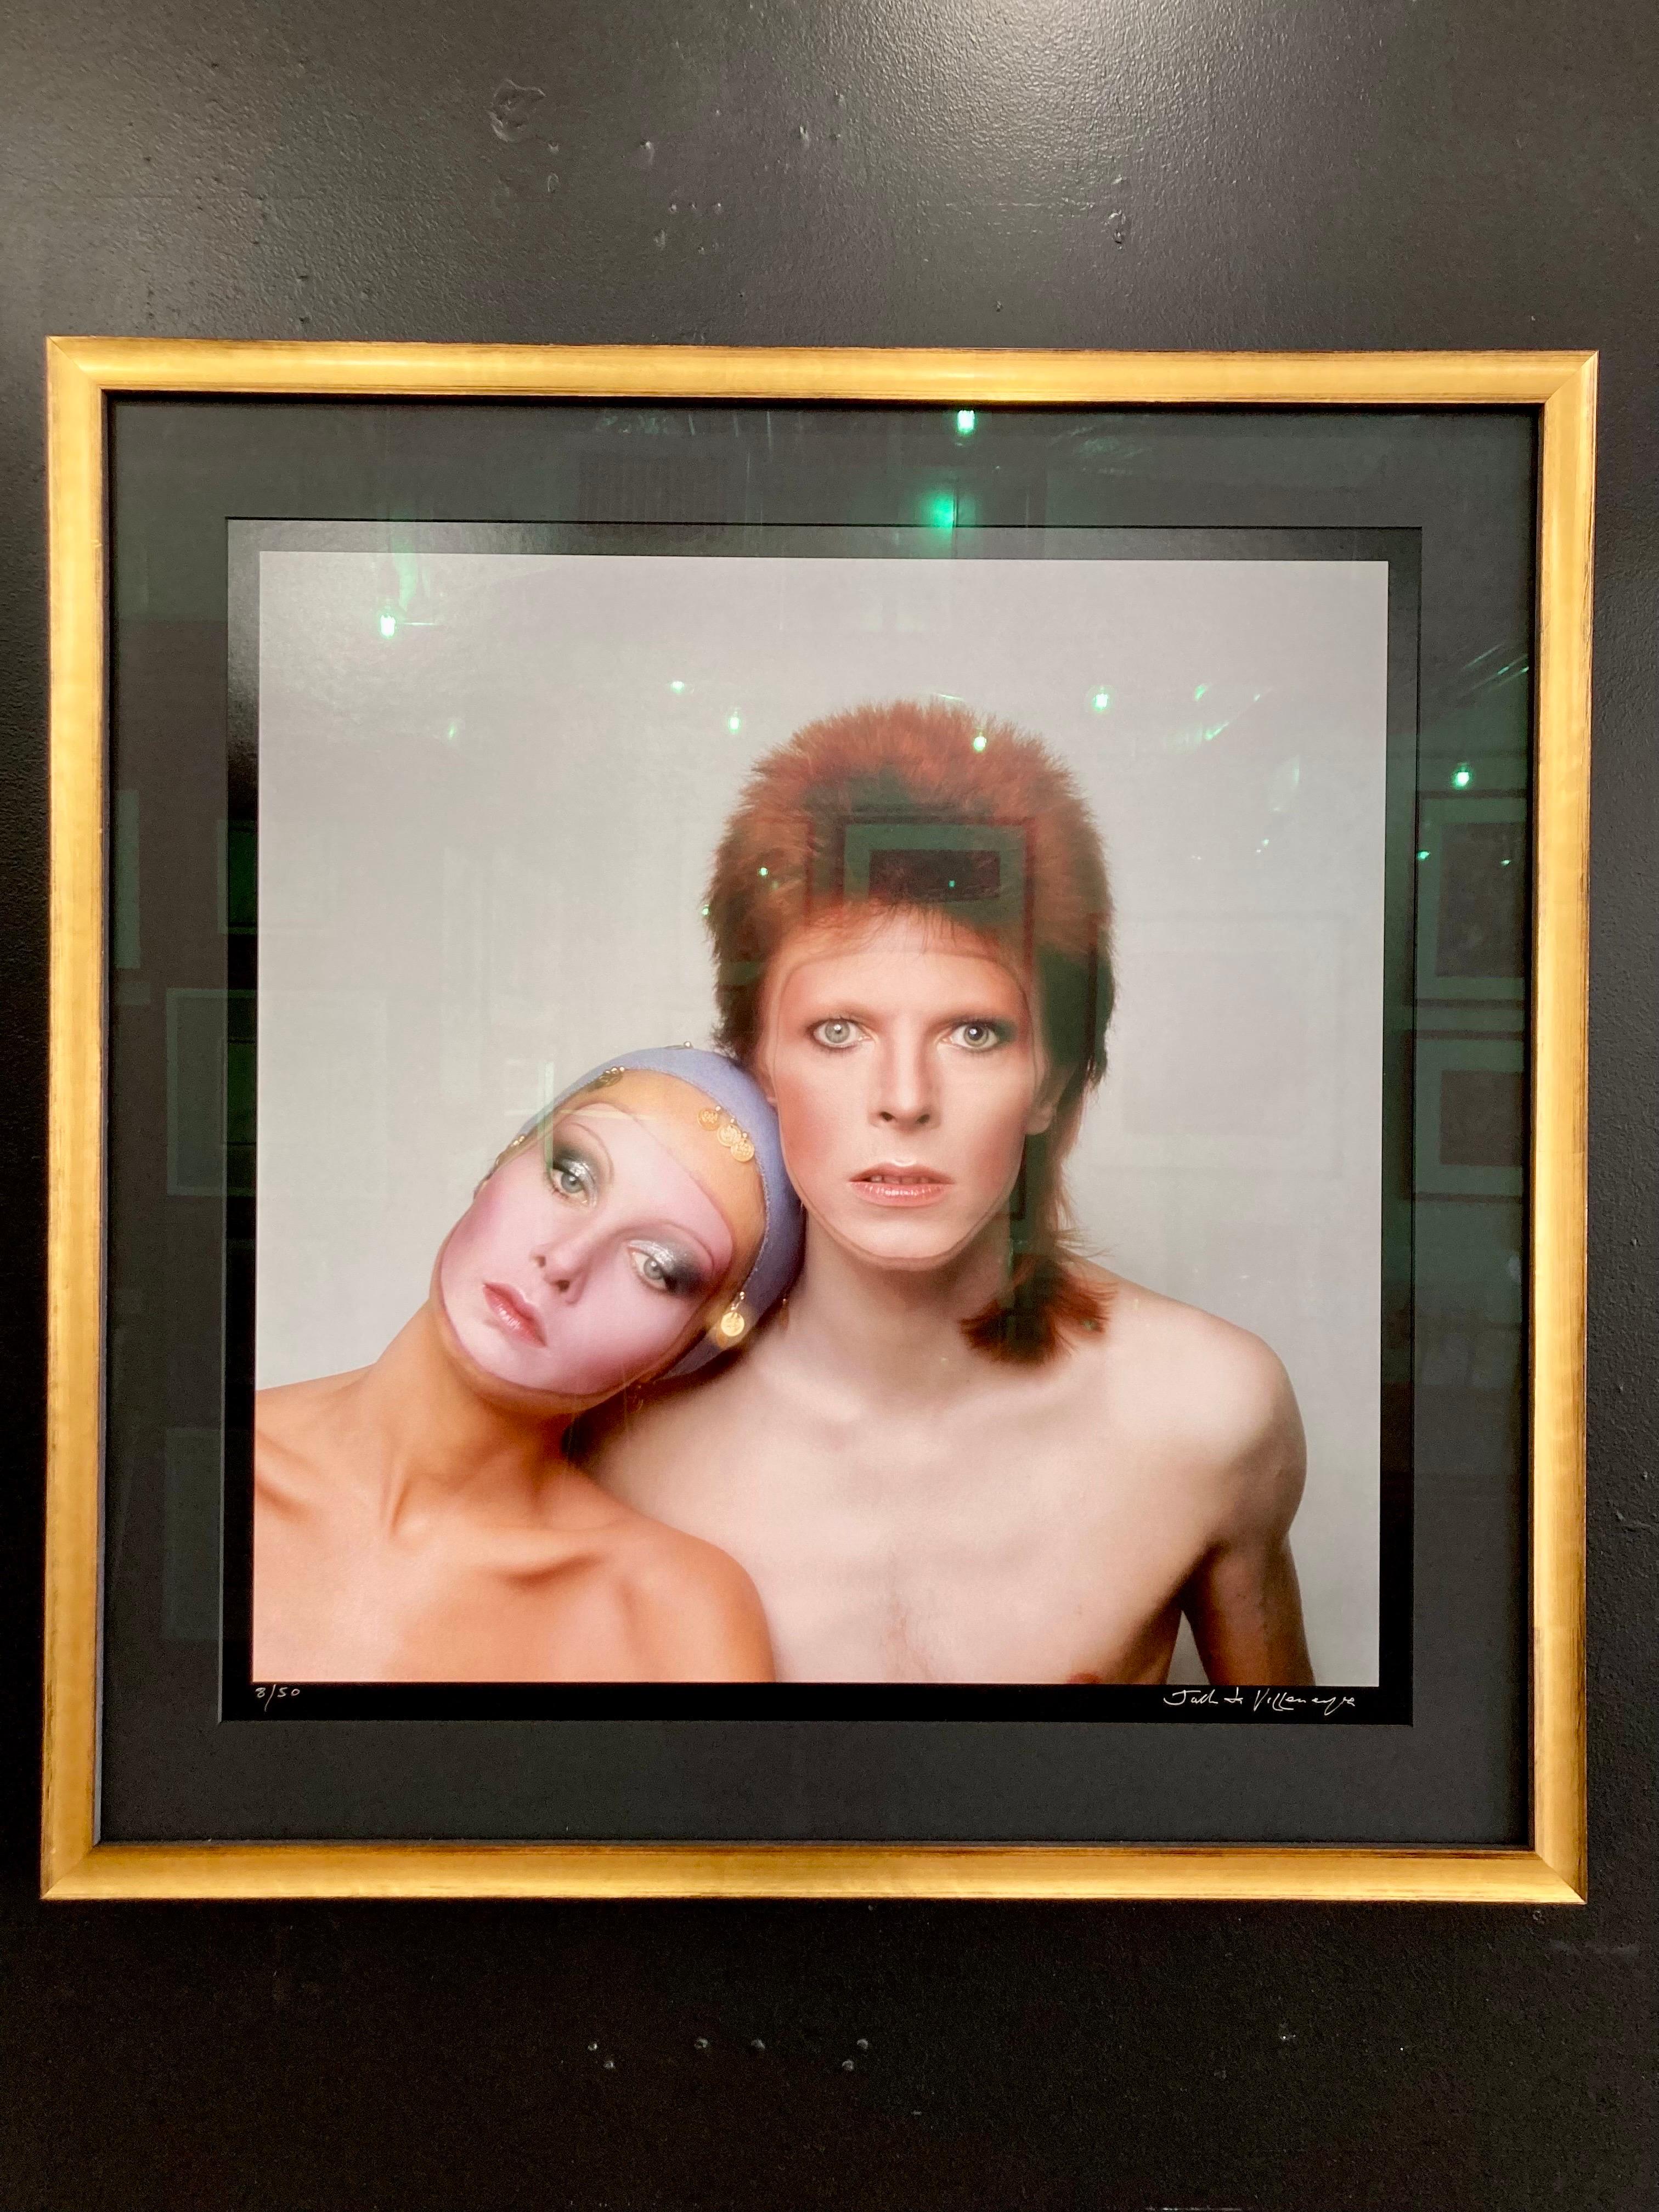 Justin de Villaneuve Portrait Photograph - Framed 30x30" David Bowie & Twiggy Pin-Ups album cover by Justin de Villeneuve